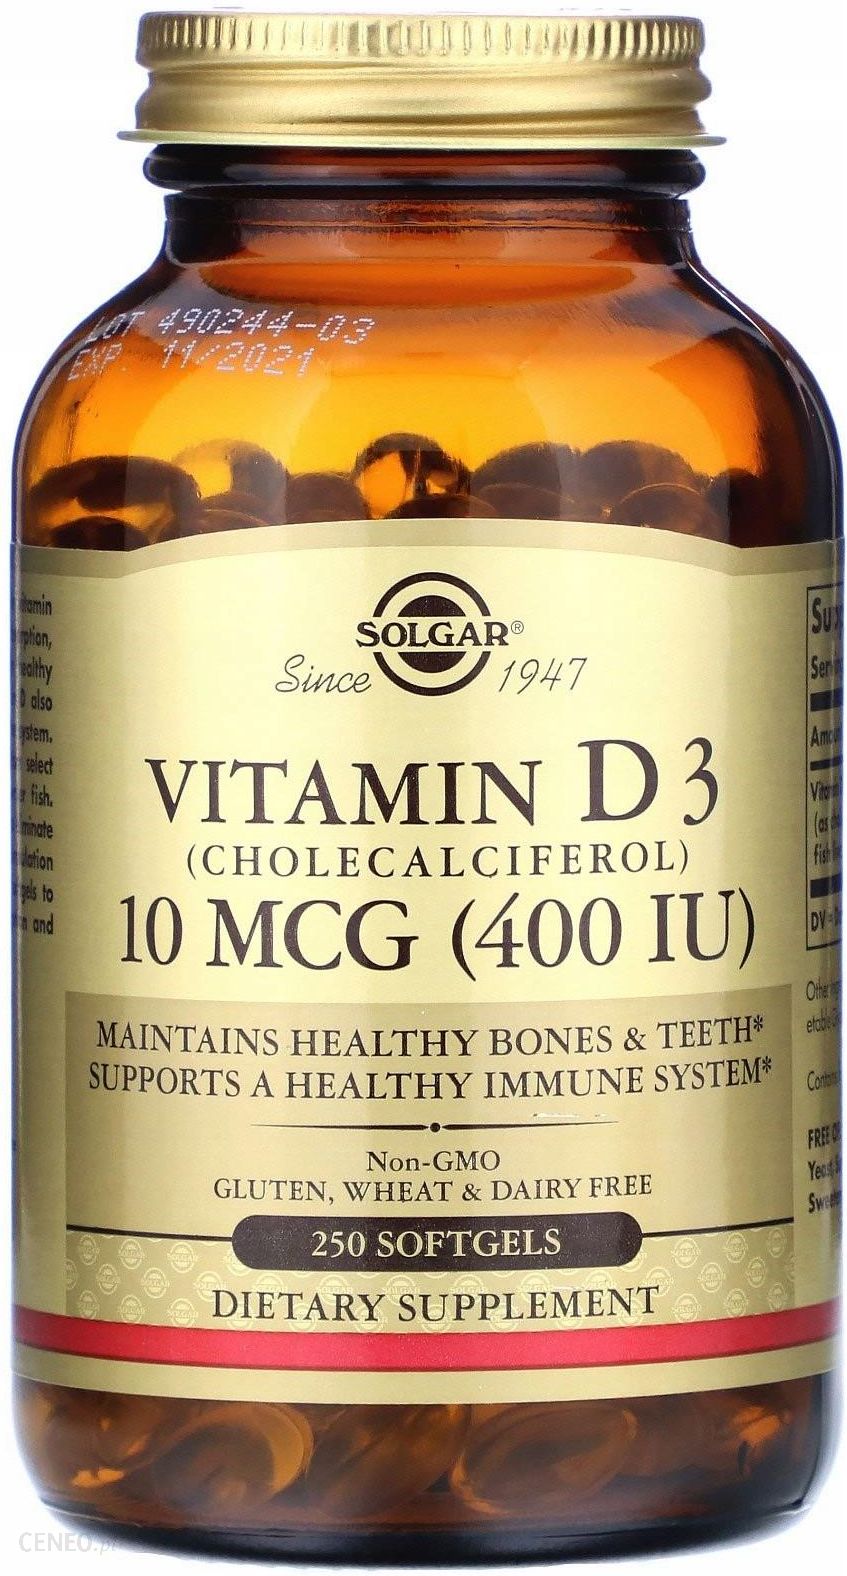 Витамин д3 5 мкг. Капсулы Solgar Vitamin d3. Солгар d3 10 MCG. Солгар витамин д3 капсулы. Solgar, витамин d3 (холекальциферол), 250 мкг (10 000 ме).